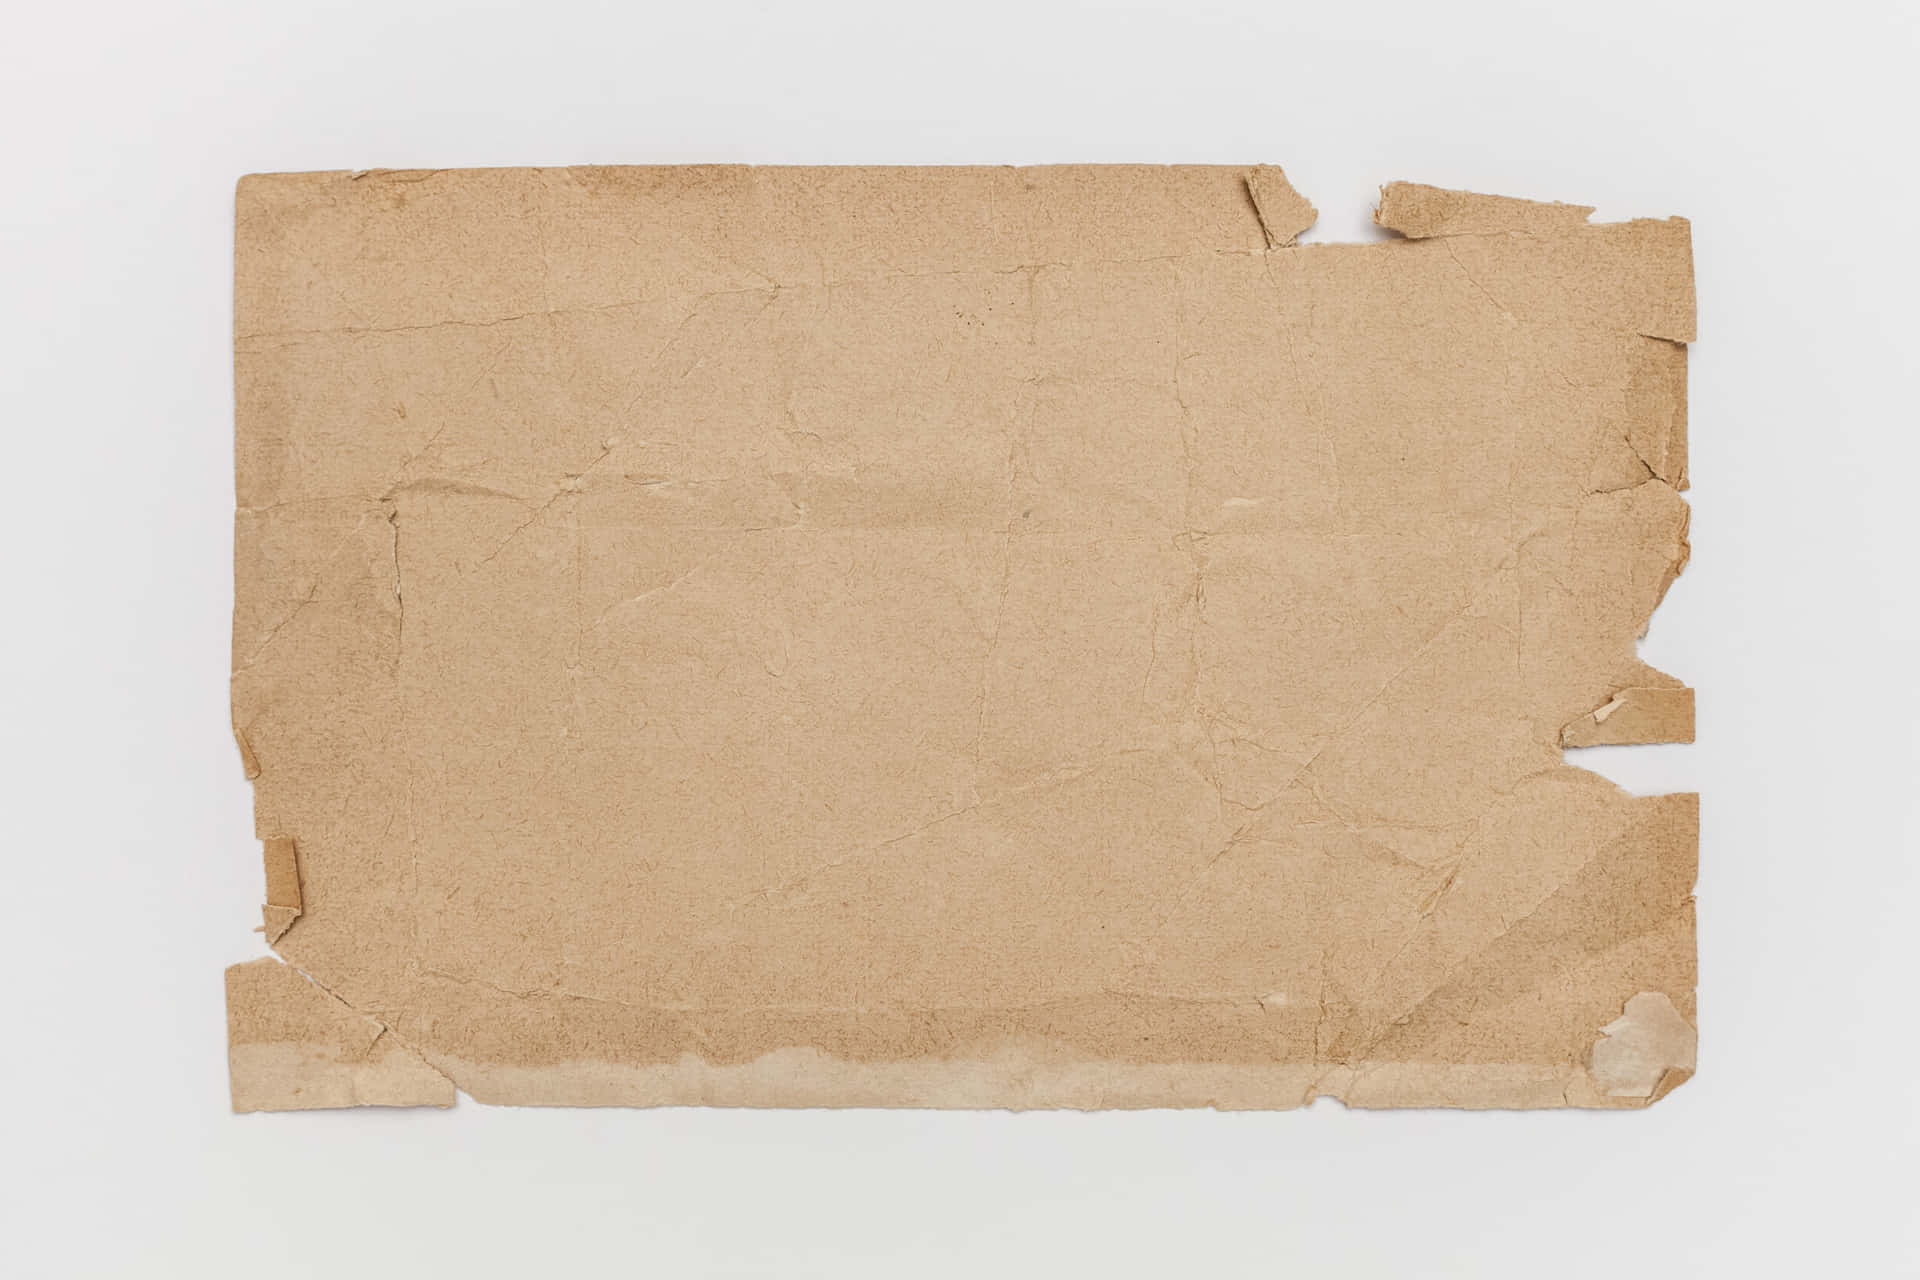 Zerfetzterbrauner Pergamentpapier-hintergrund